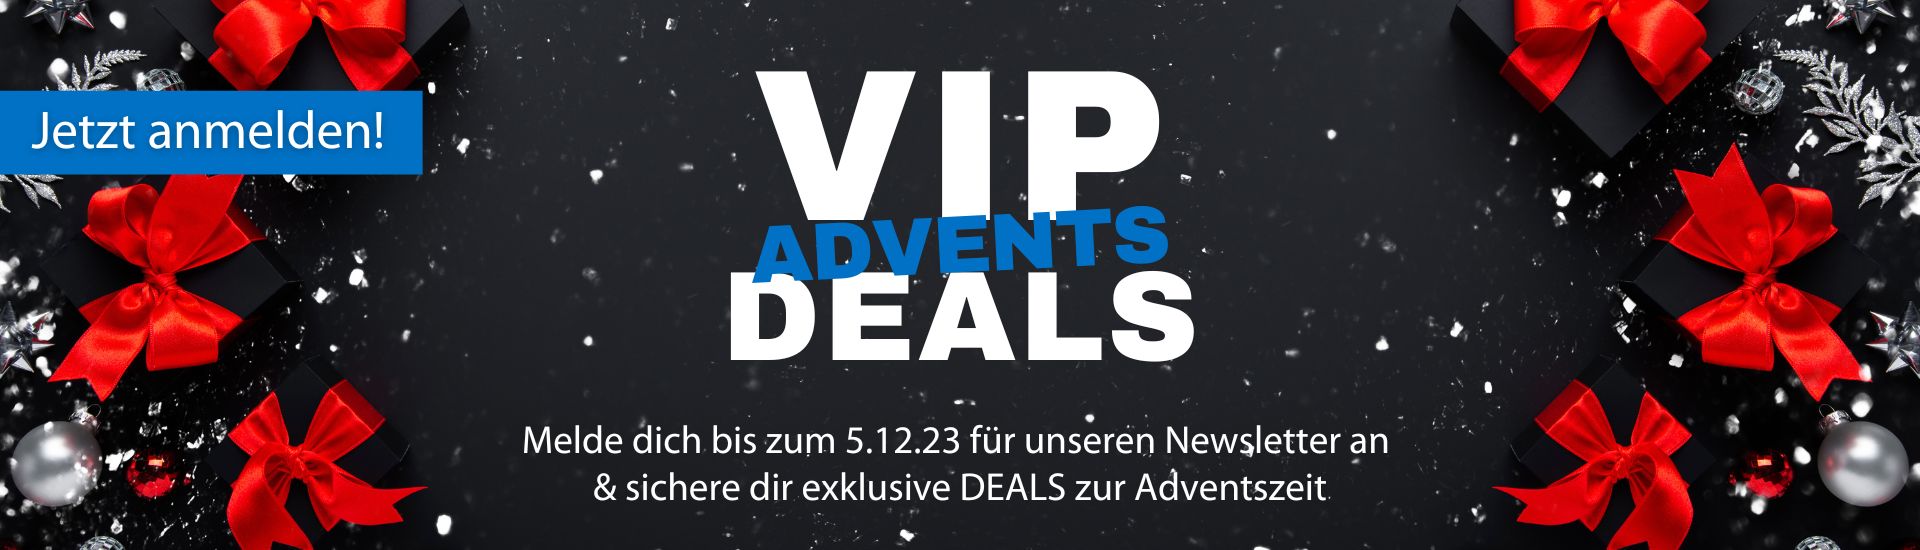 VIP Advents Deals - Jetzt zum Newsletter anmelden